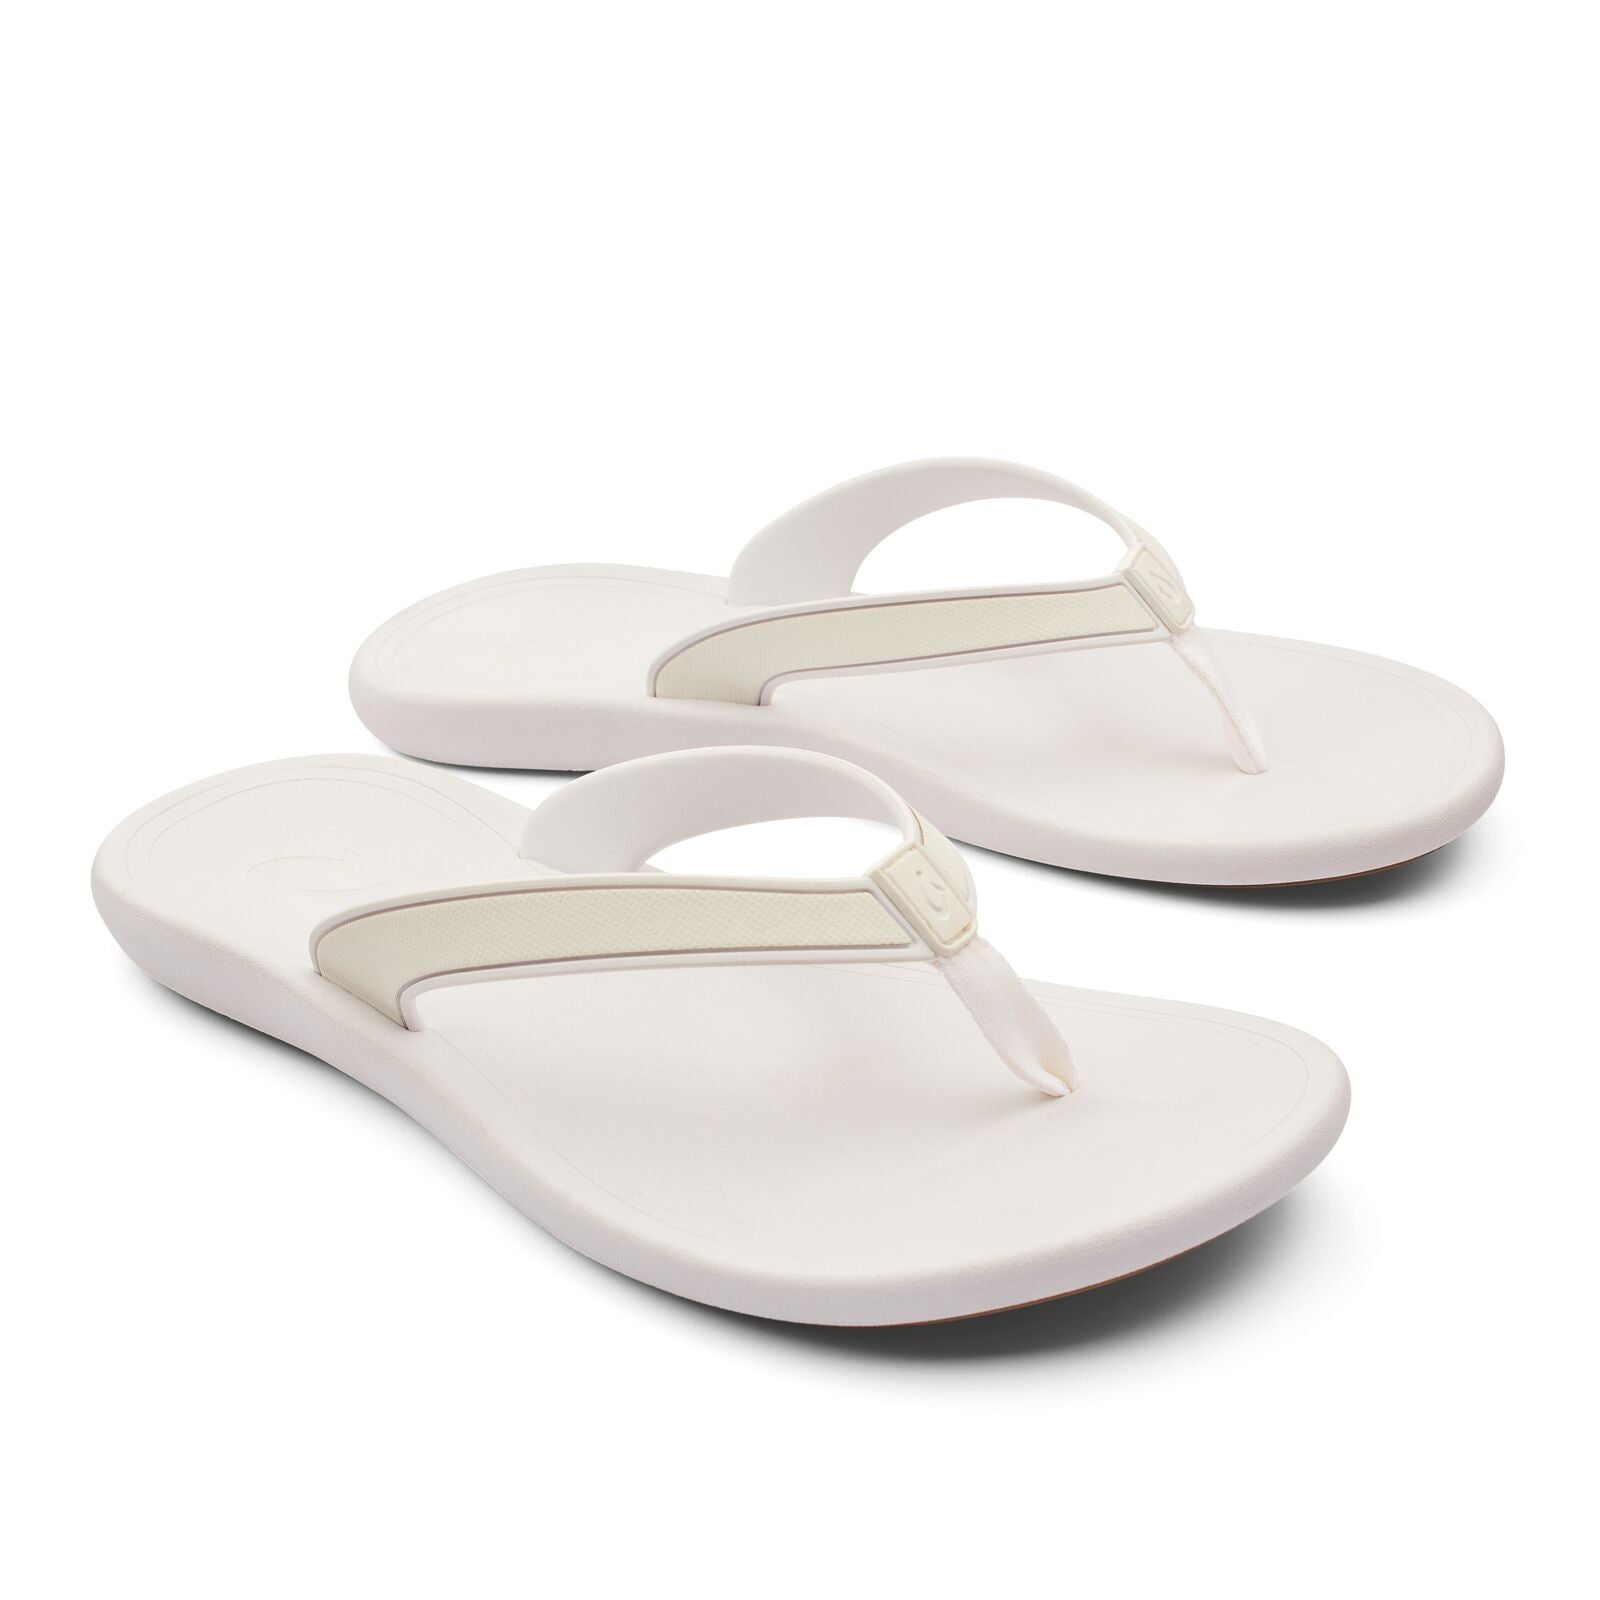 Olukai Kapehe Womens Sandal 4R4R-White-White 9